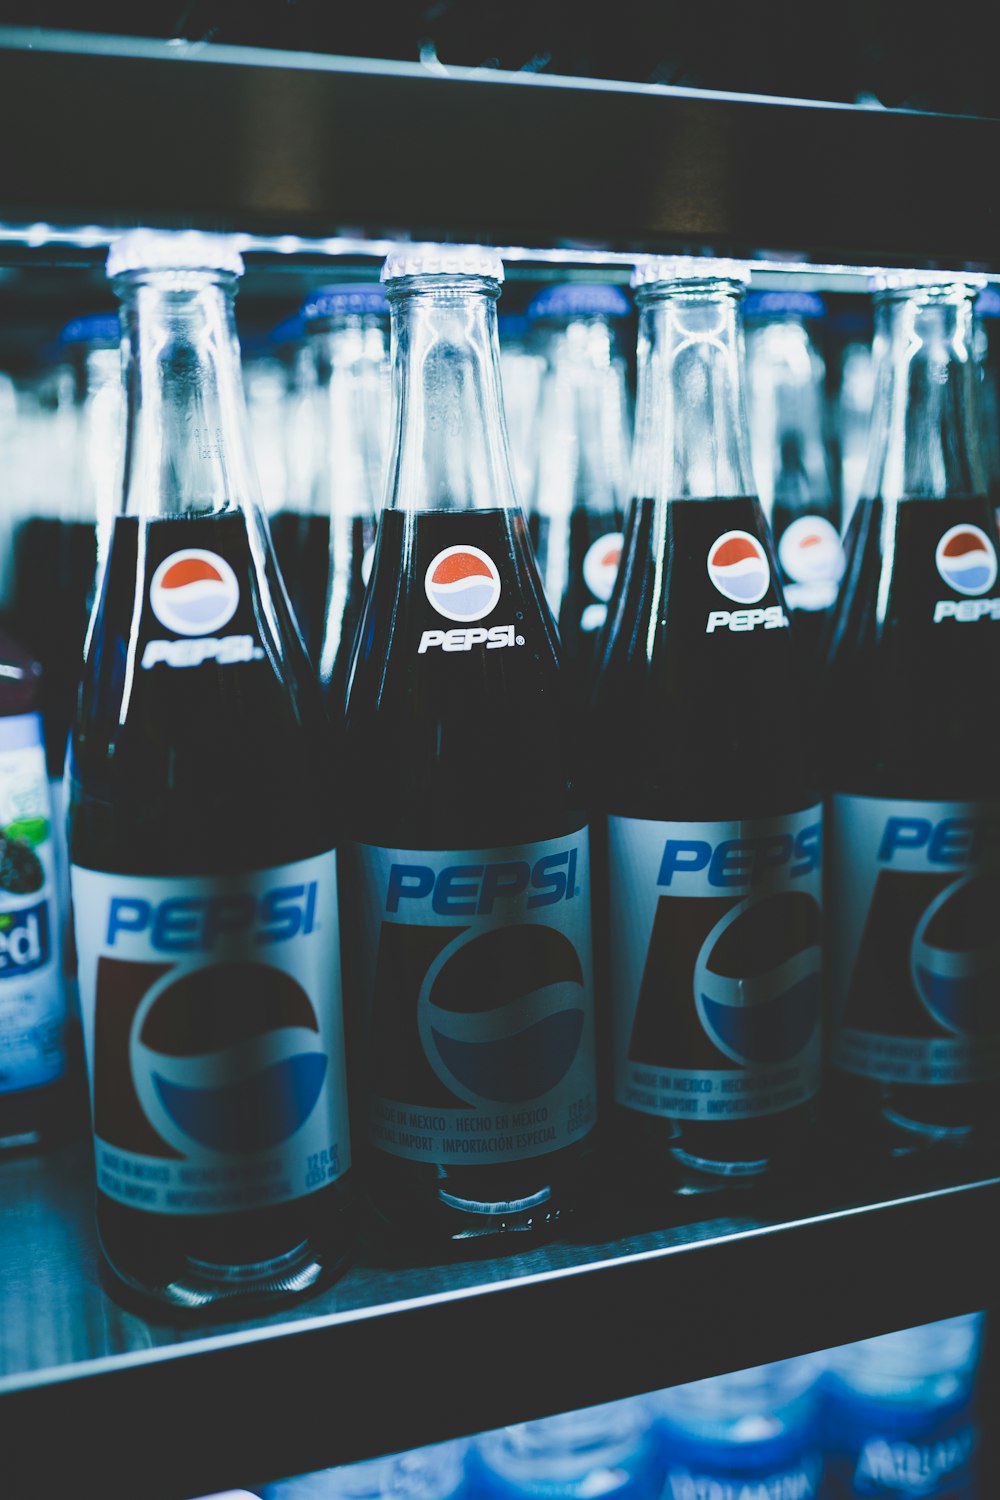 Frascos de Pepsi no refrigerador